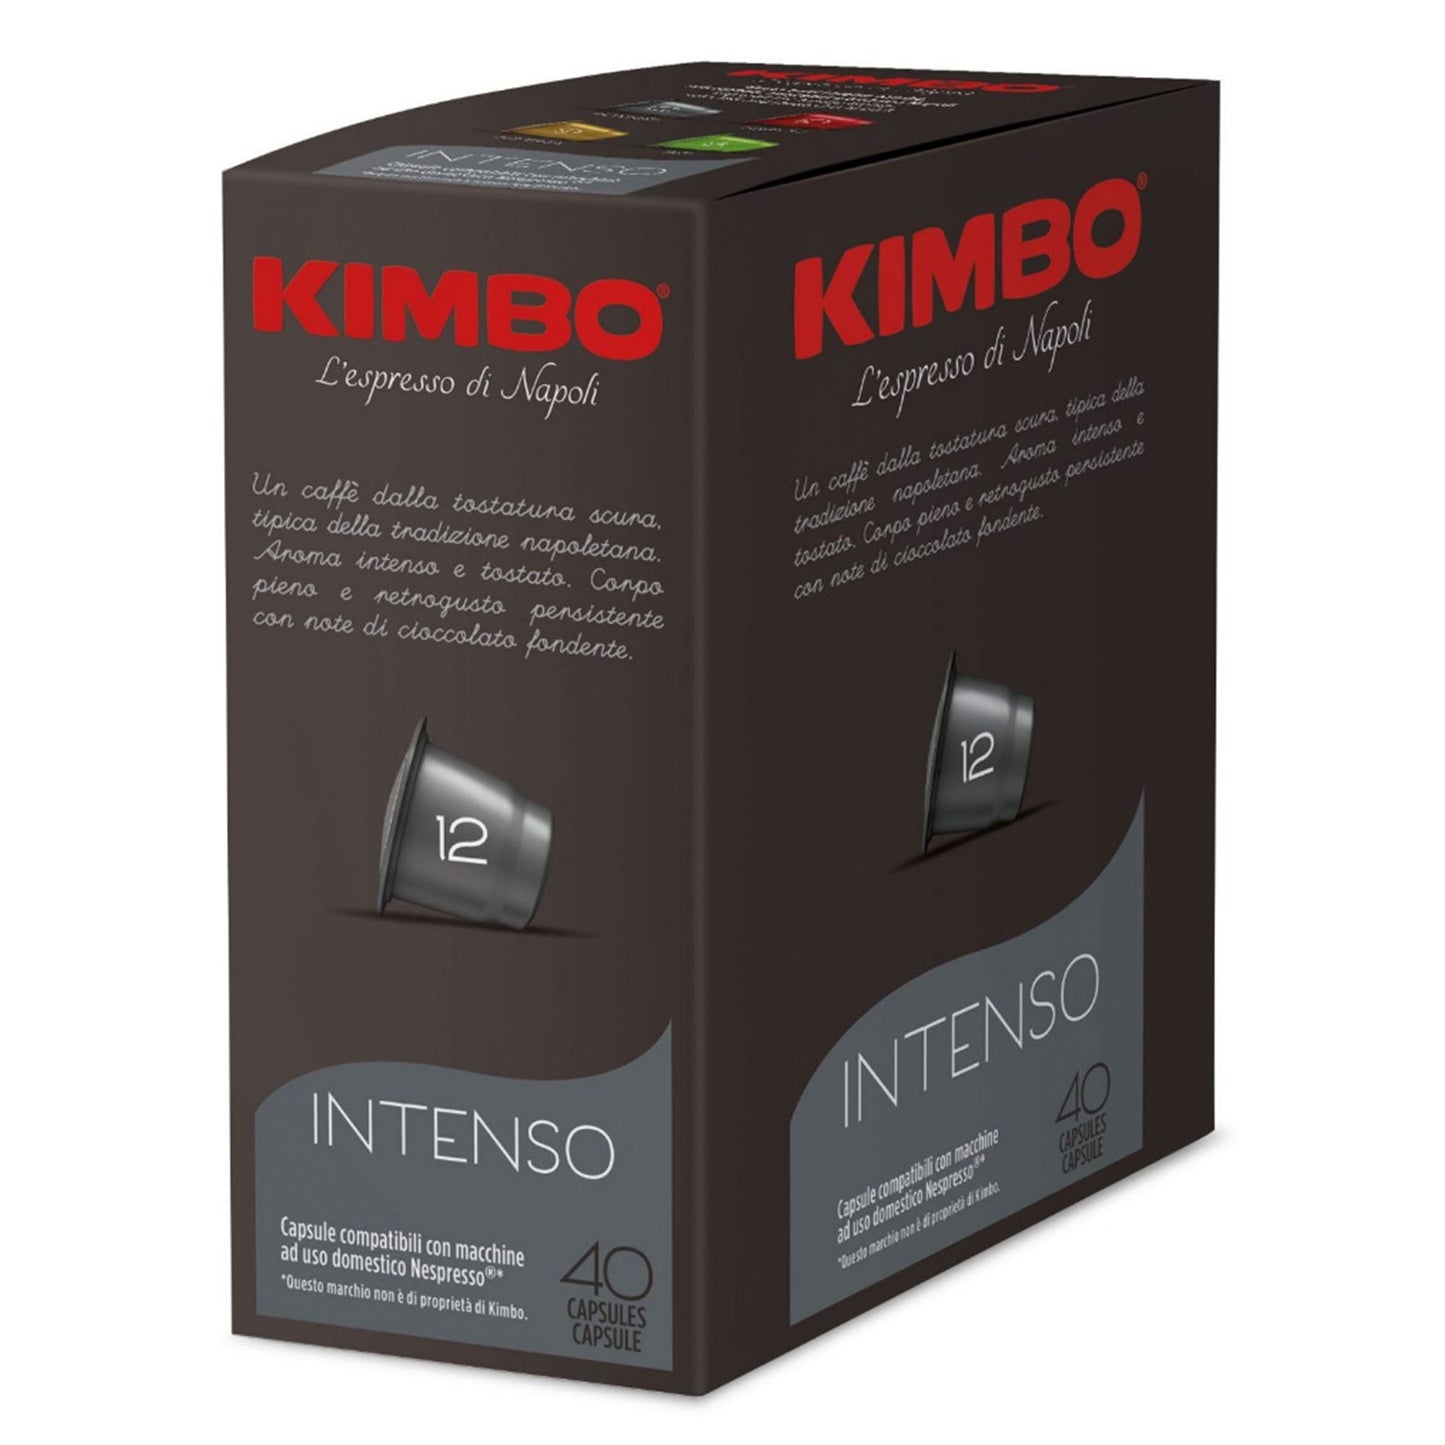 Kimbo Nespresso Intens 40Pods